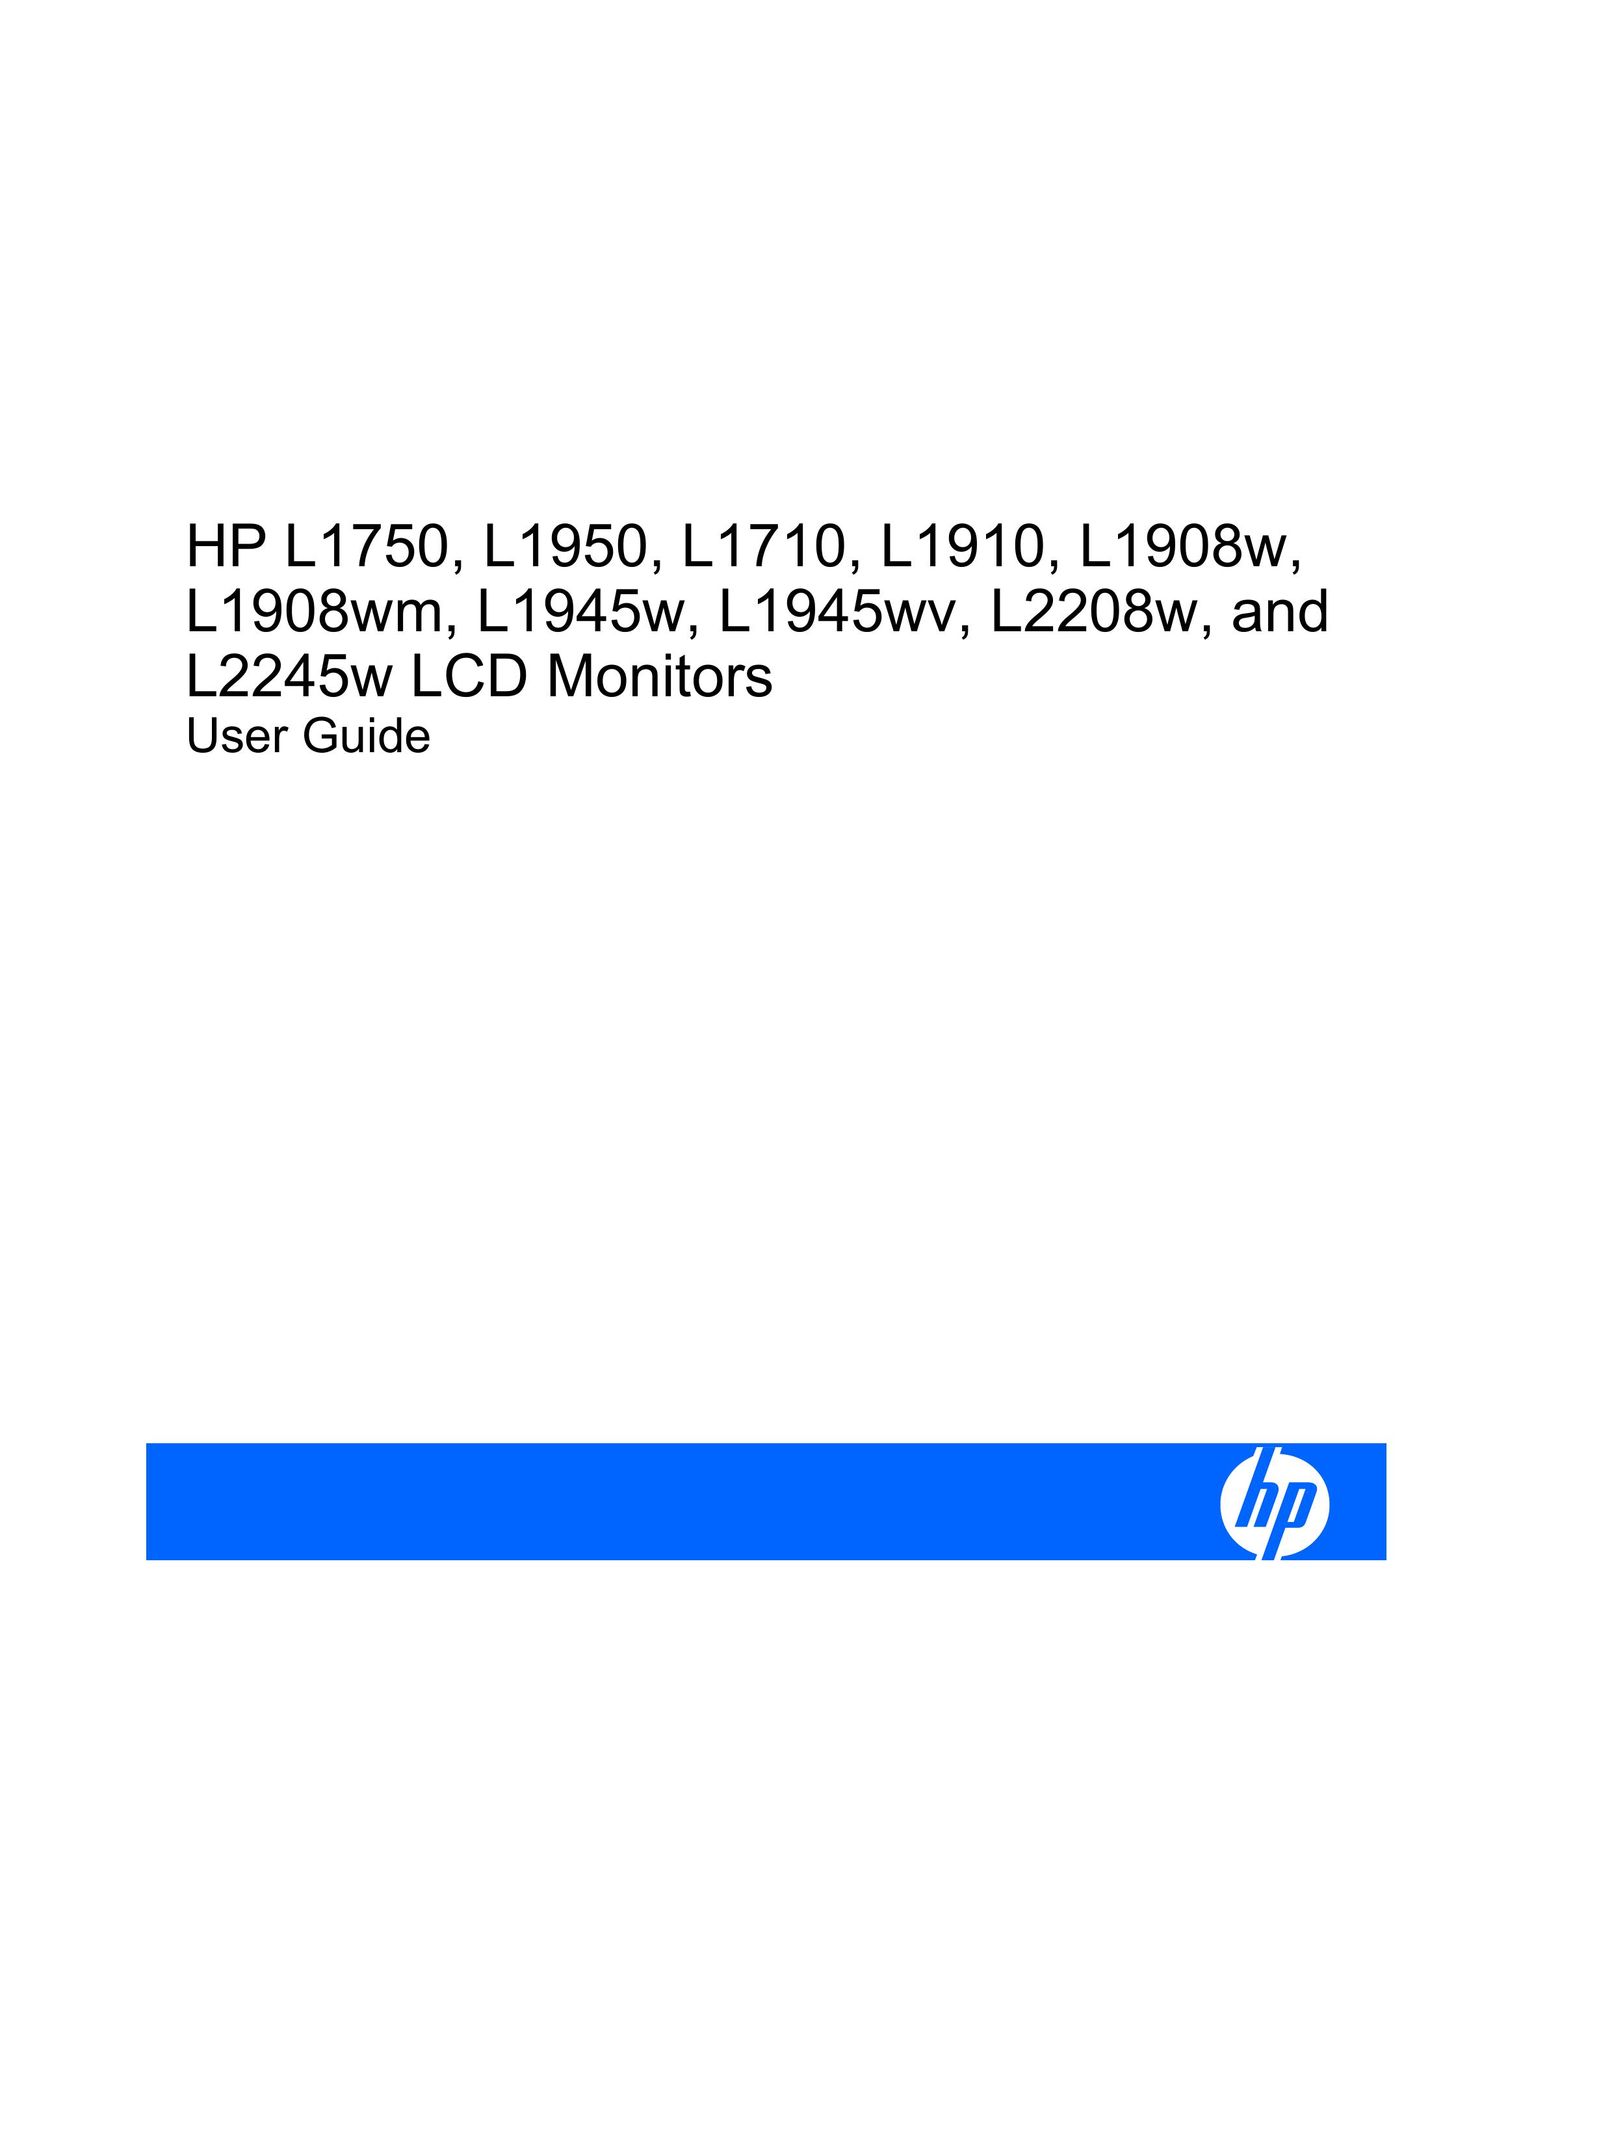 HP (Hewlett-Packard) L2245W Flat Panel Television User Manual